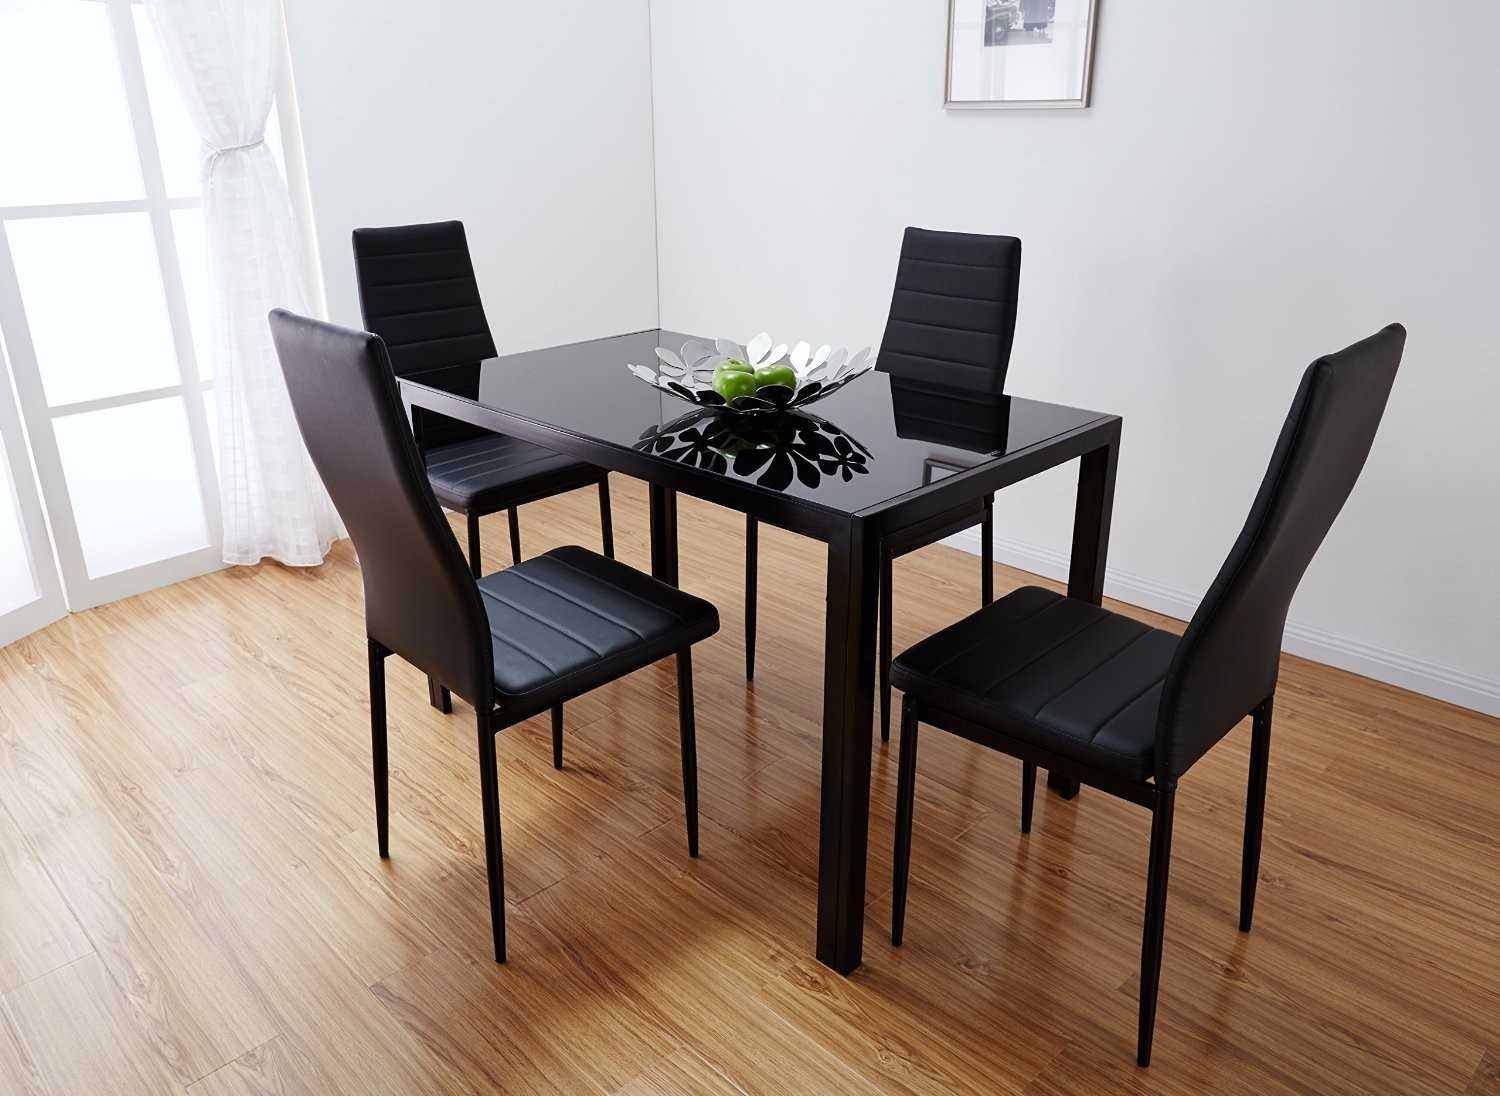 Как выбрать кухонные столы и стулья для маленькой кухни: разновидности мебели и полезные рекомендации